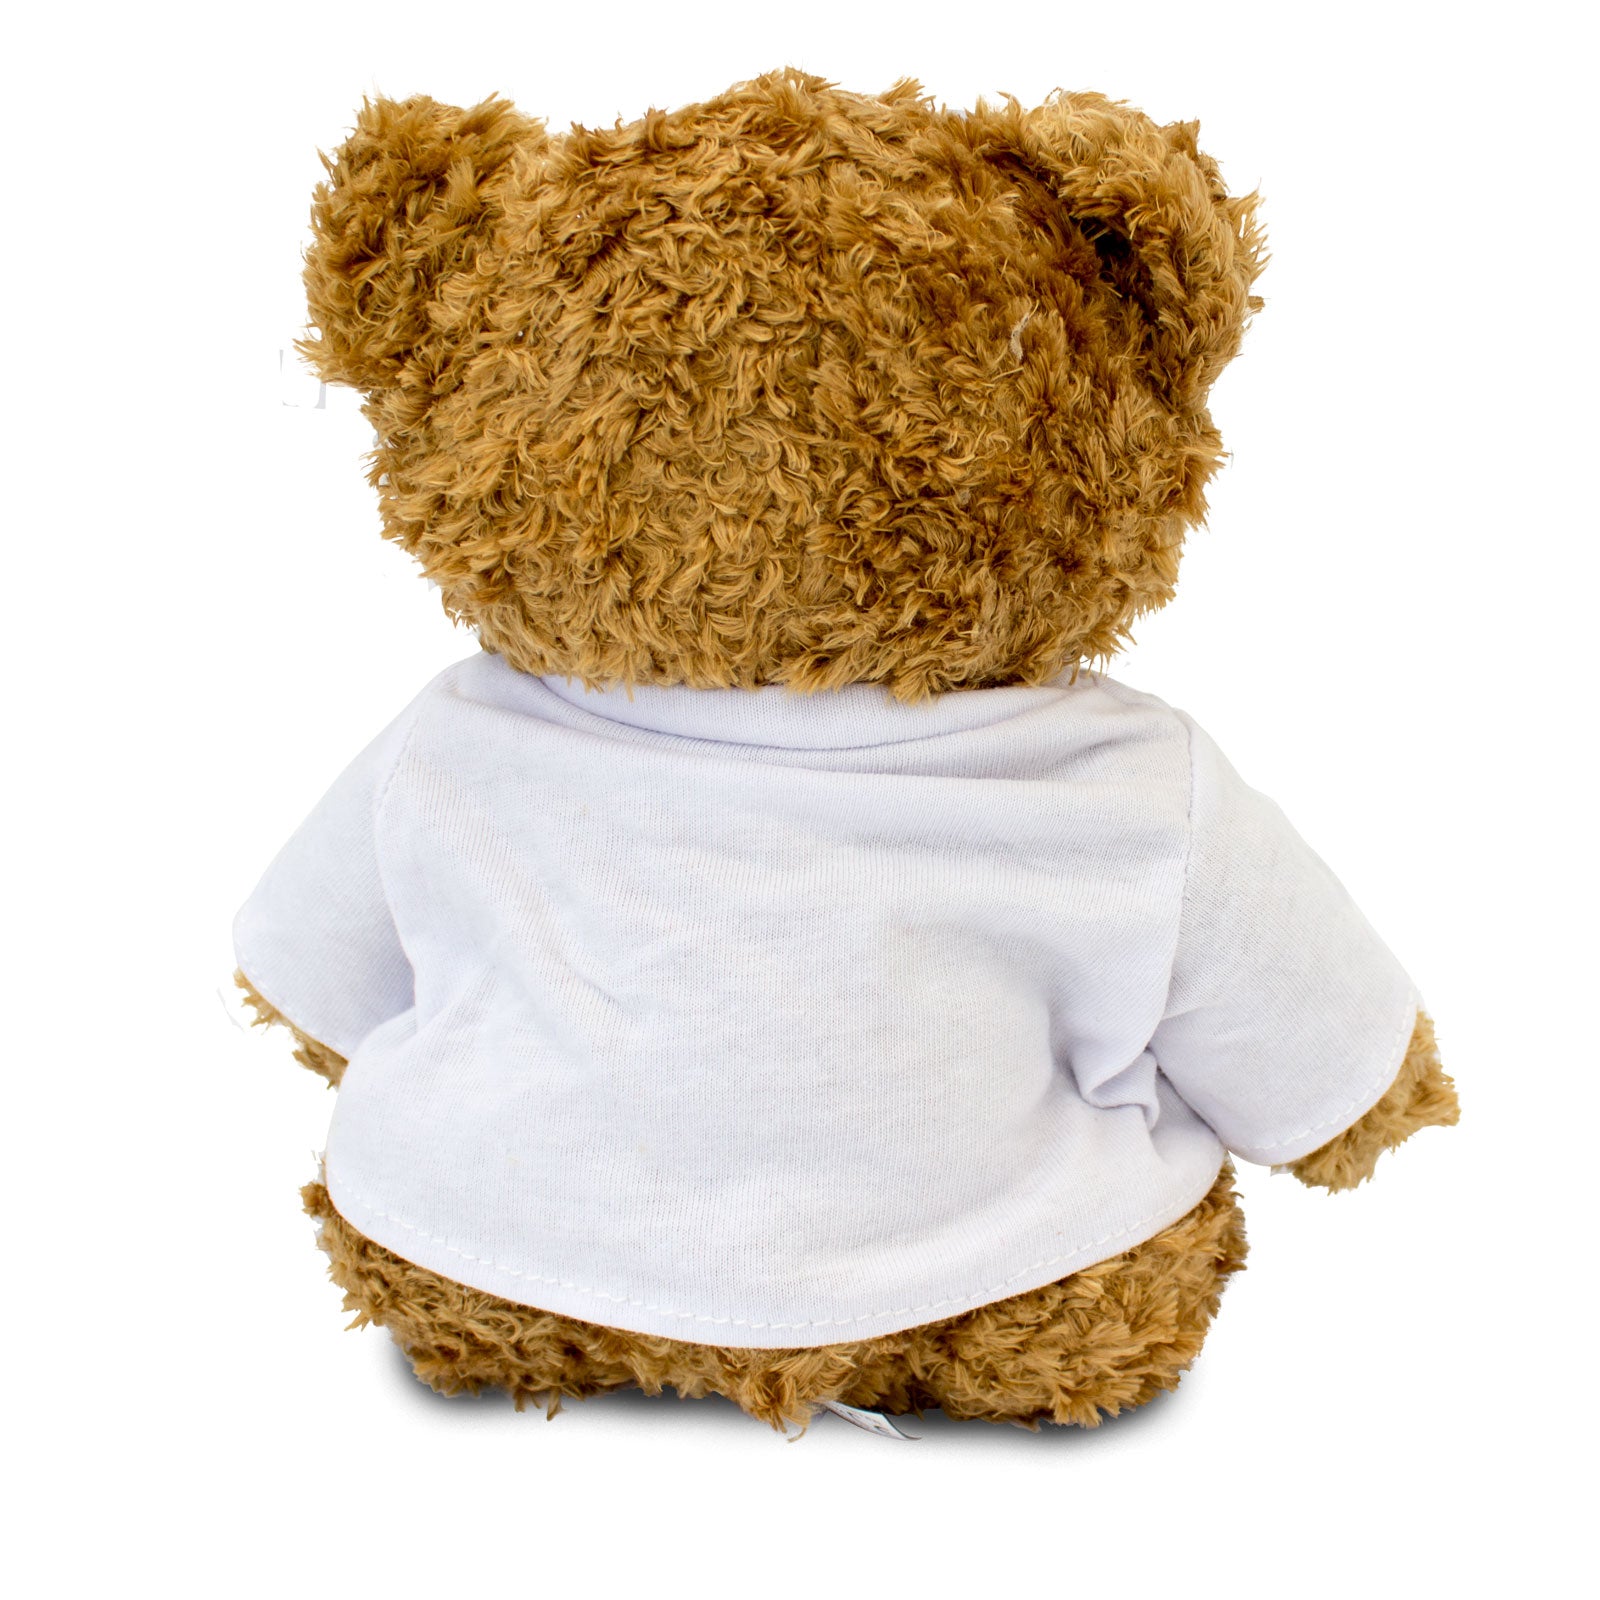 Get Well Soon Angie - Teddy Bear